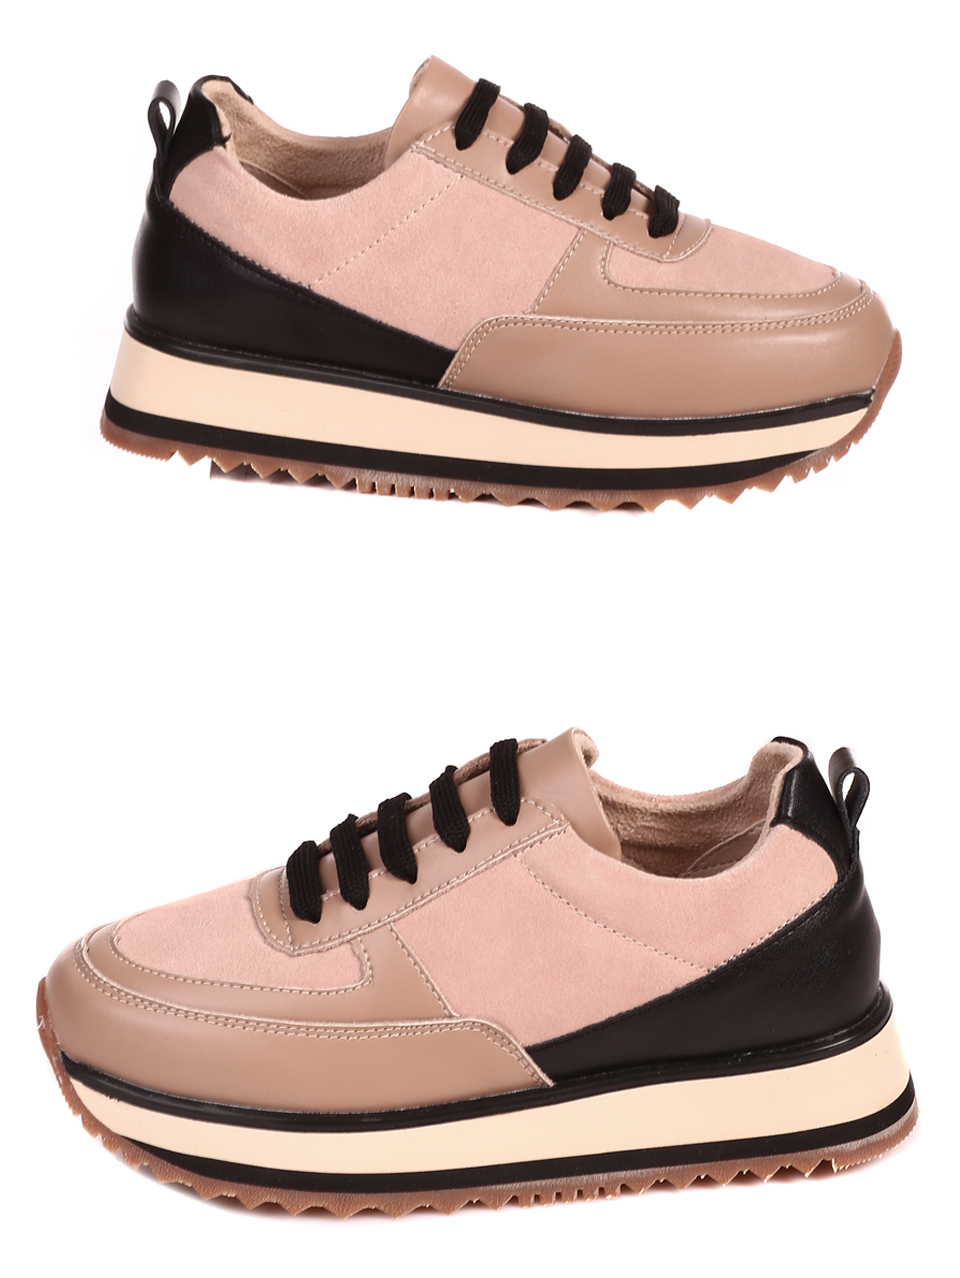 Ежедневни дамски обувки на платформа от естествена кожа 3AF-22667 beige/black